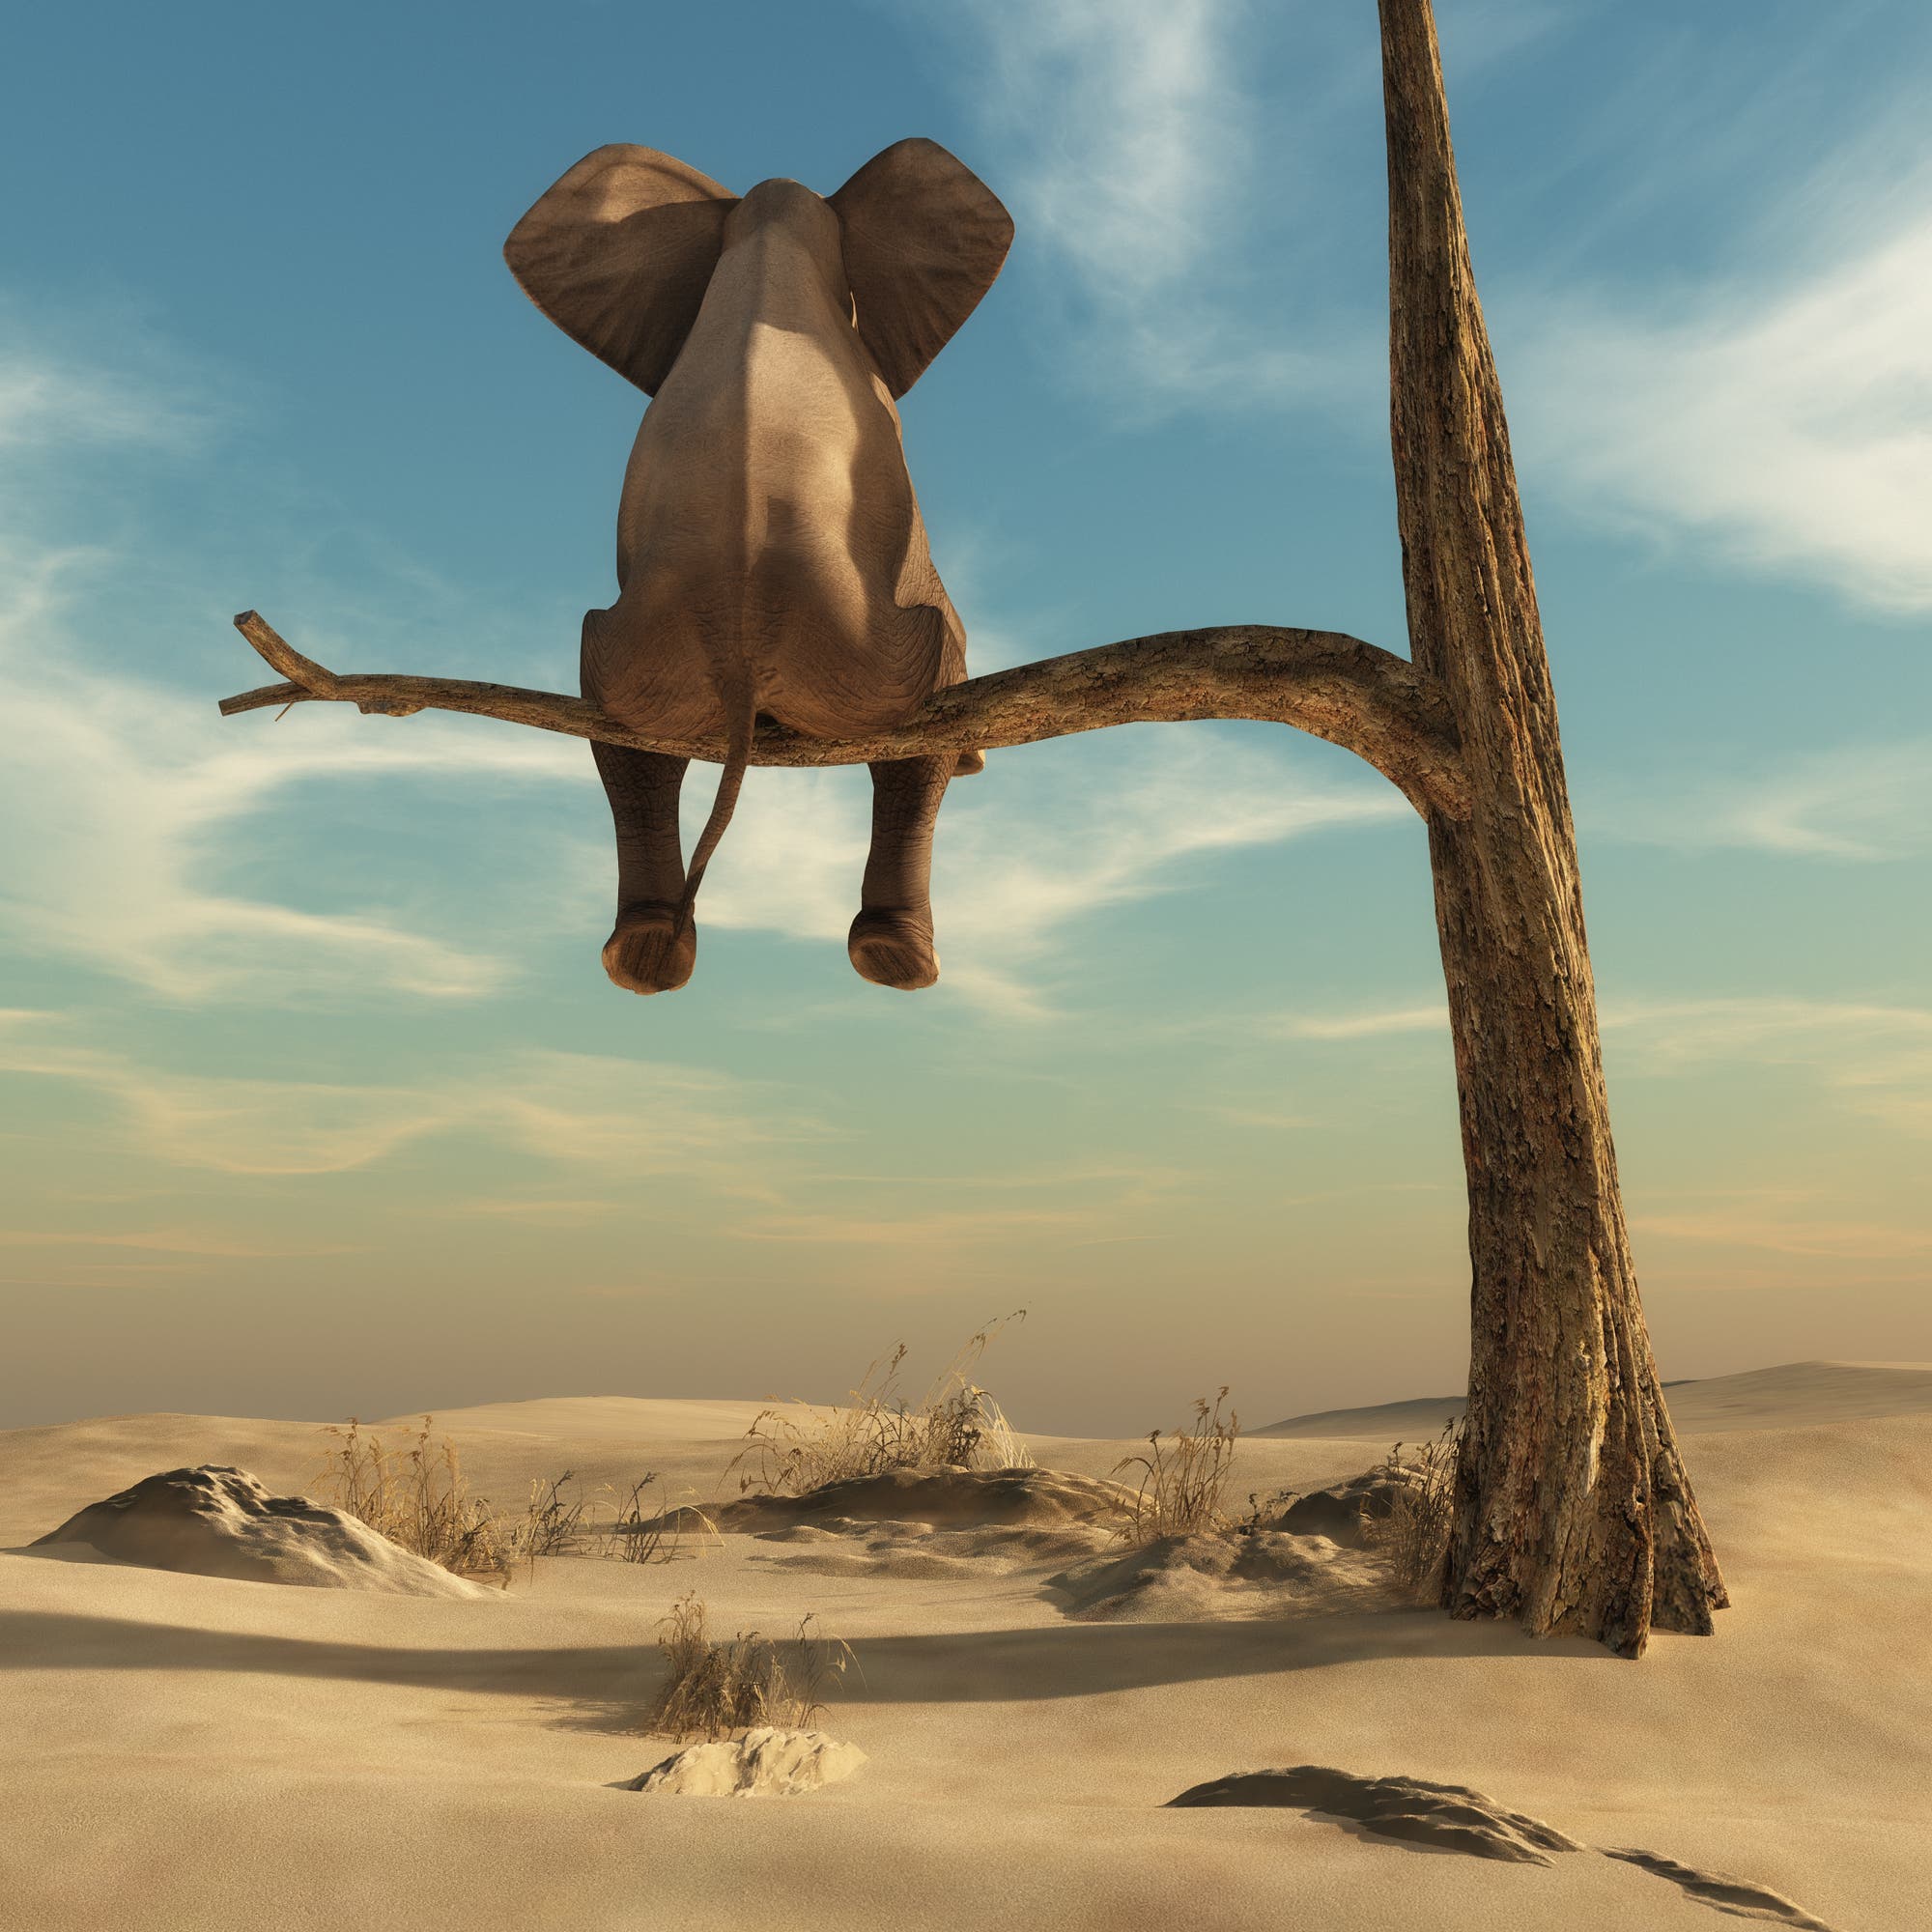 Traumwelt: Ein Elefant sitzt auf dem Ast eines Baumes in der Wüste